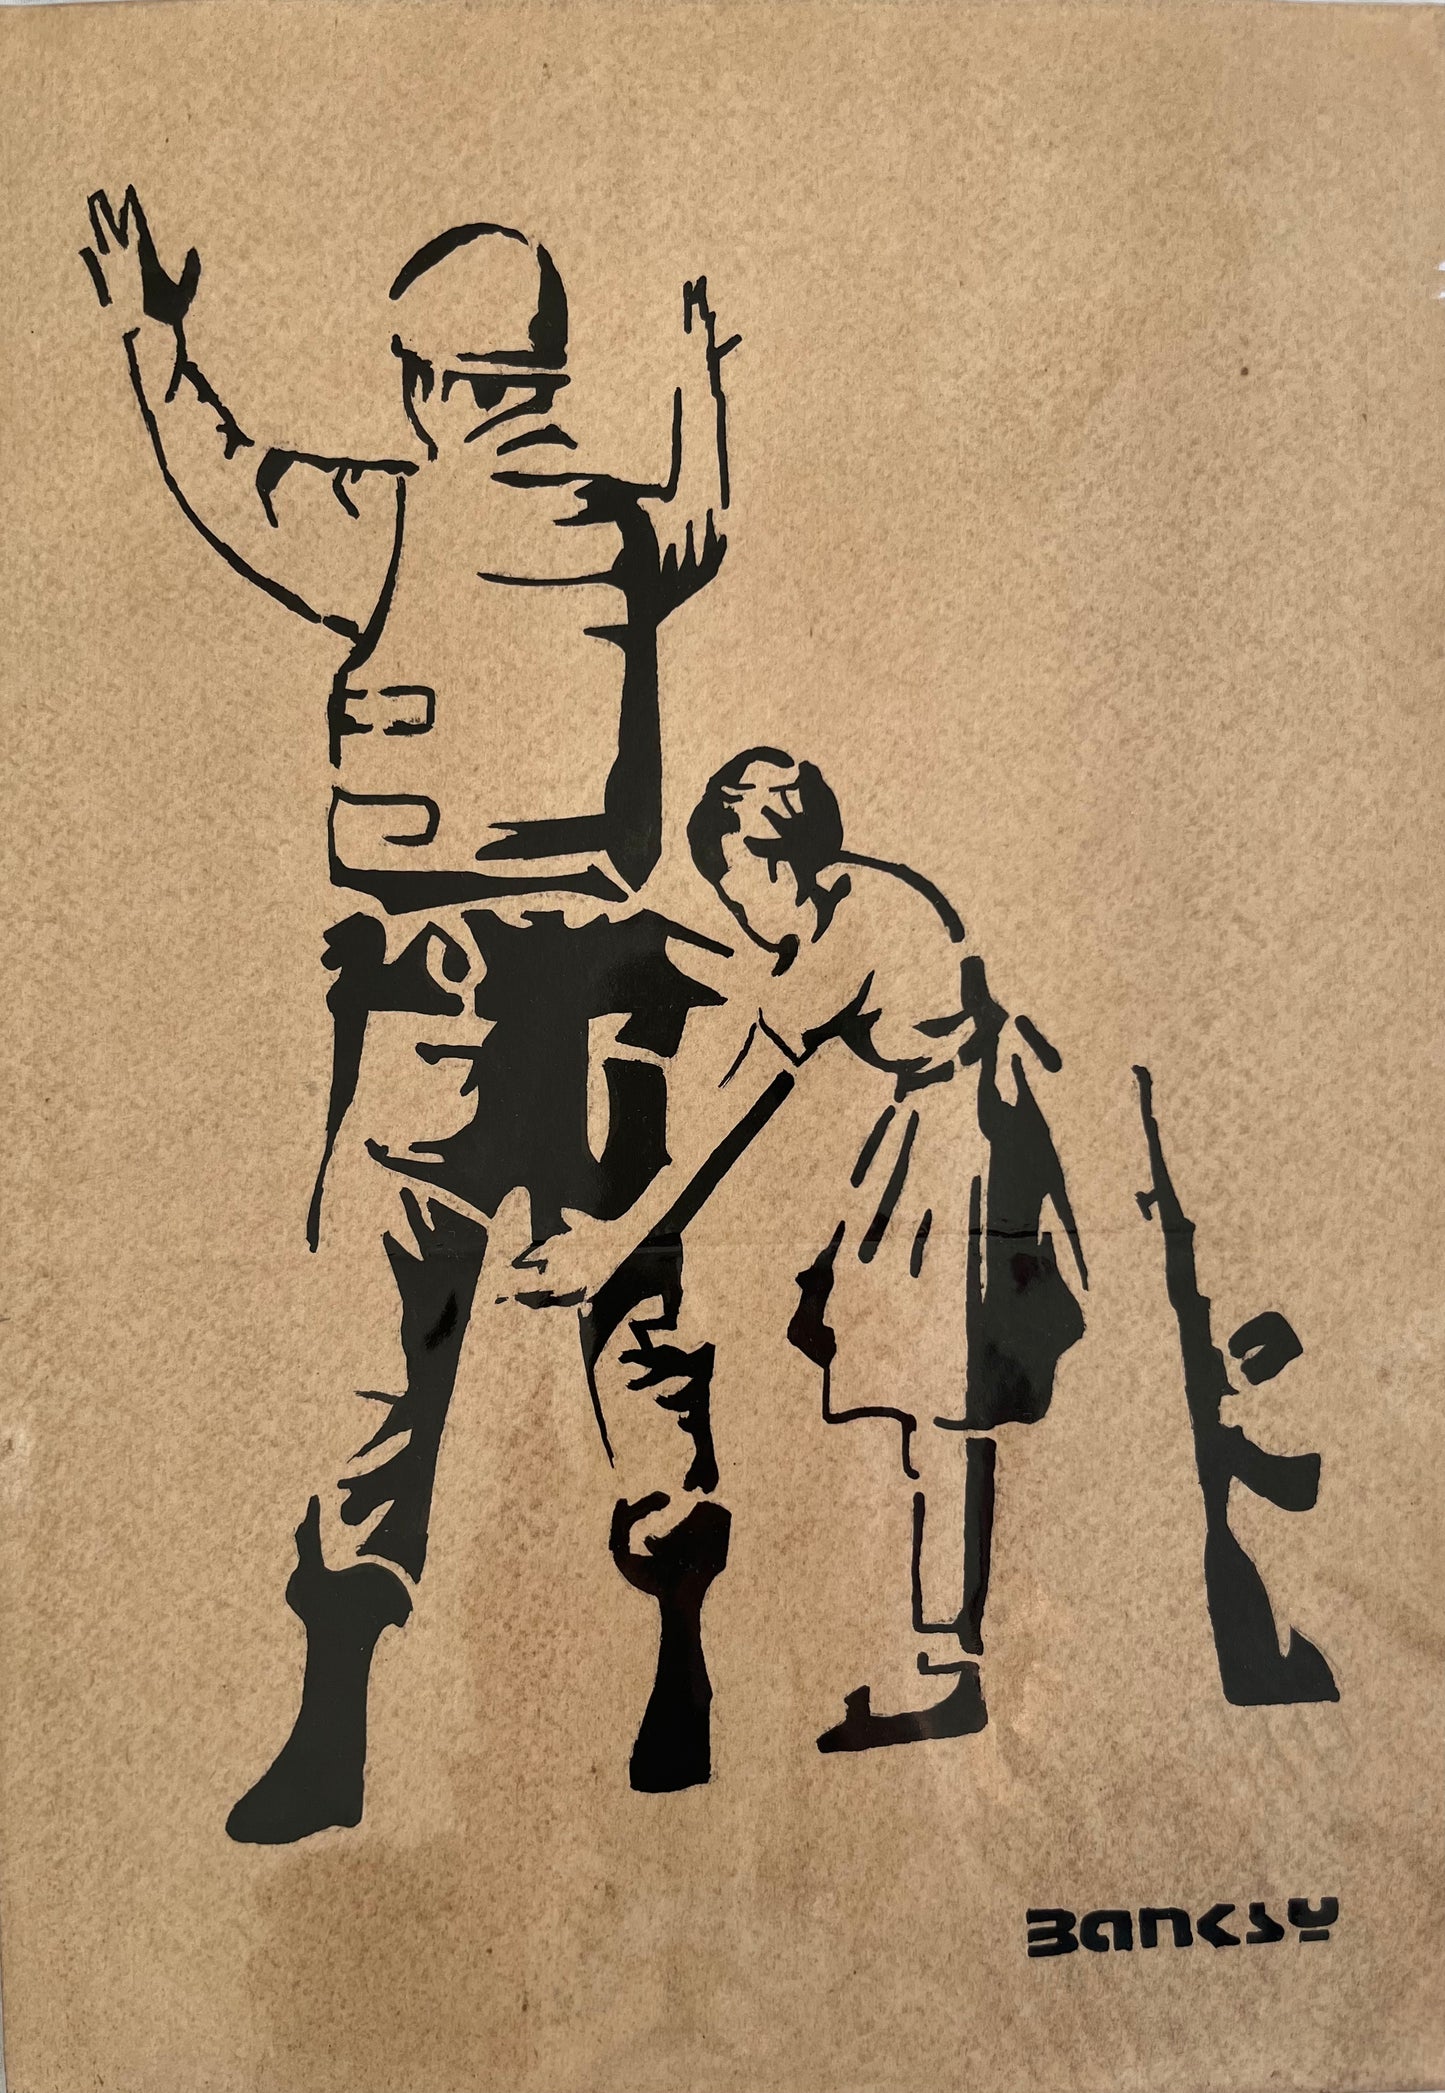 BANKSY x TATE – Girl Frisking Soldier – Zeichnung auf Kunstpapier